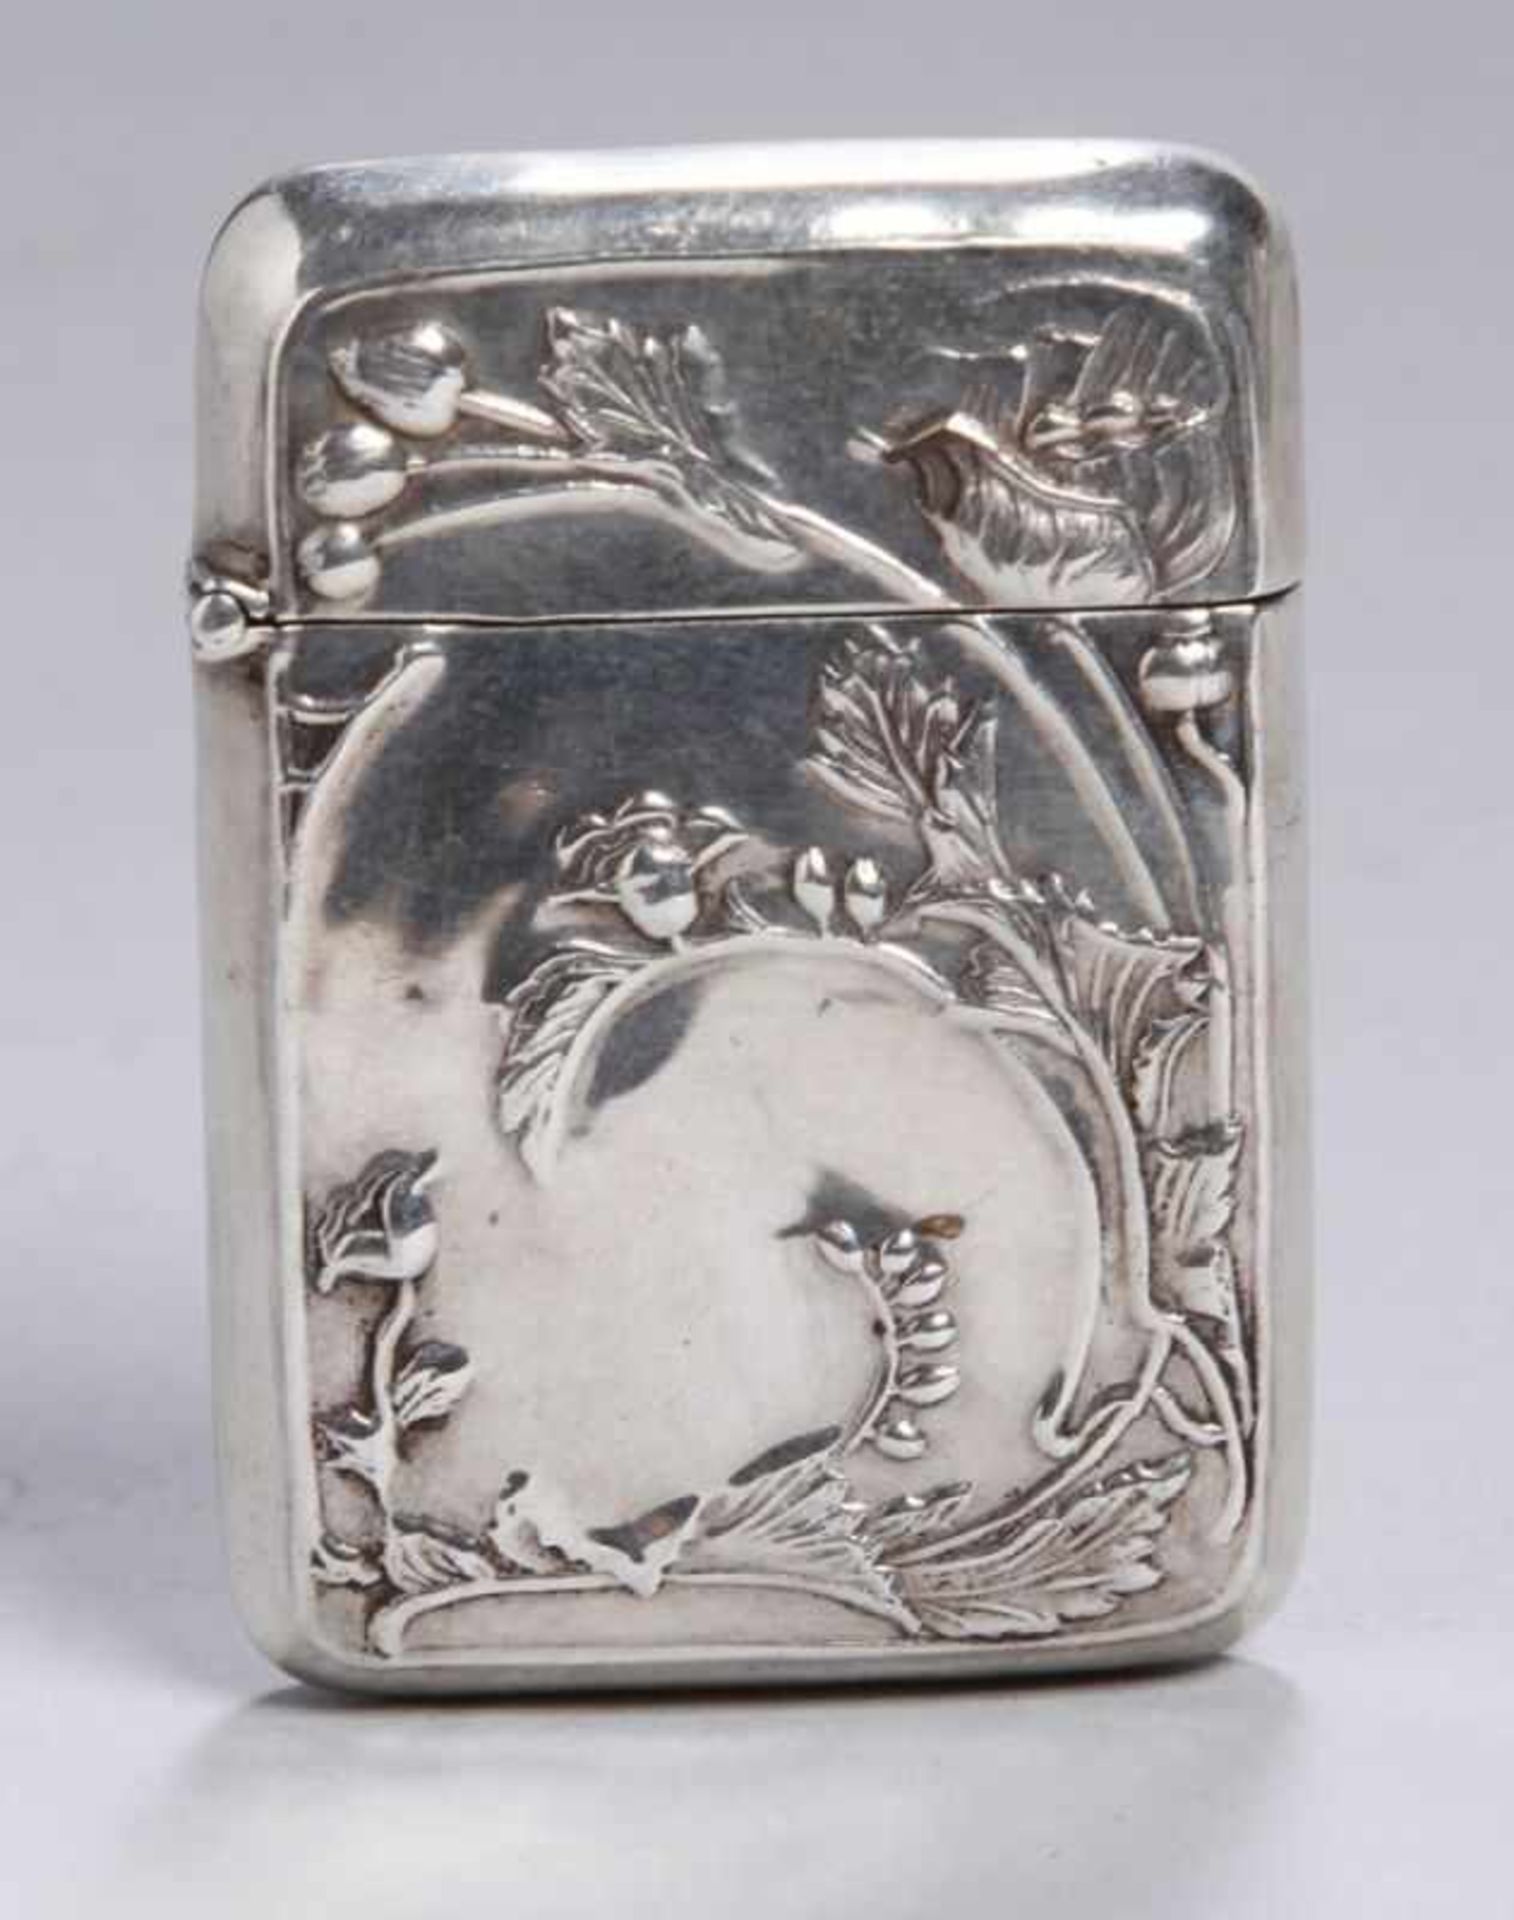 Streichholz-Etui, Frankreich, um 1900, Silber, rechteckige Form, scharnierter Deckel, Wandung mit